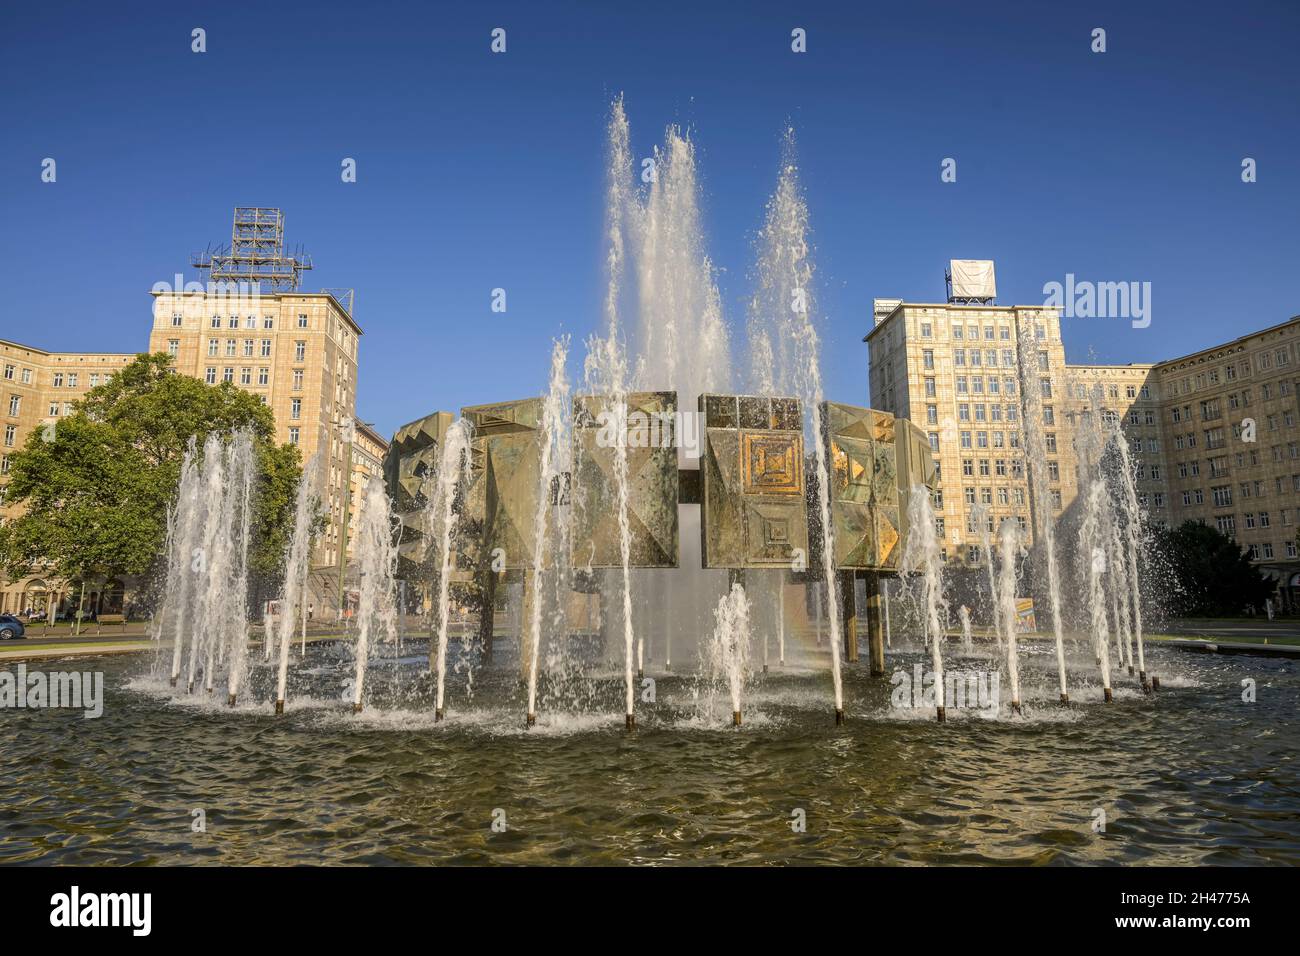 Brunnen, Strausberger Platz, Friedrichshain, Berlin, Deutschland Stock Photo